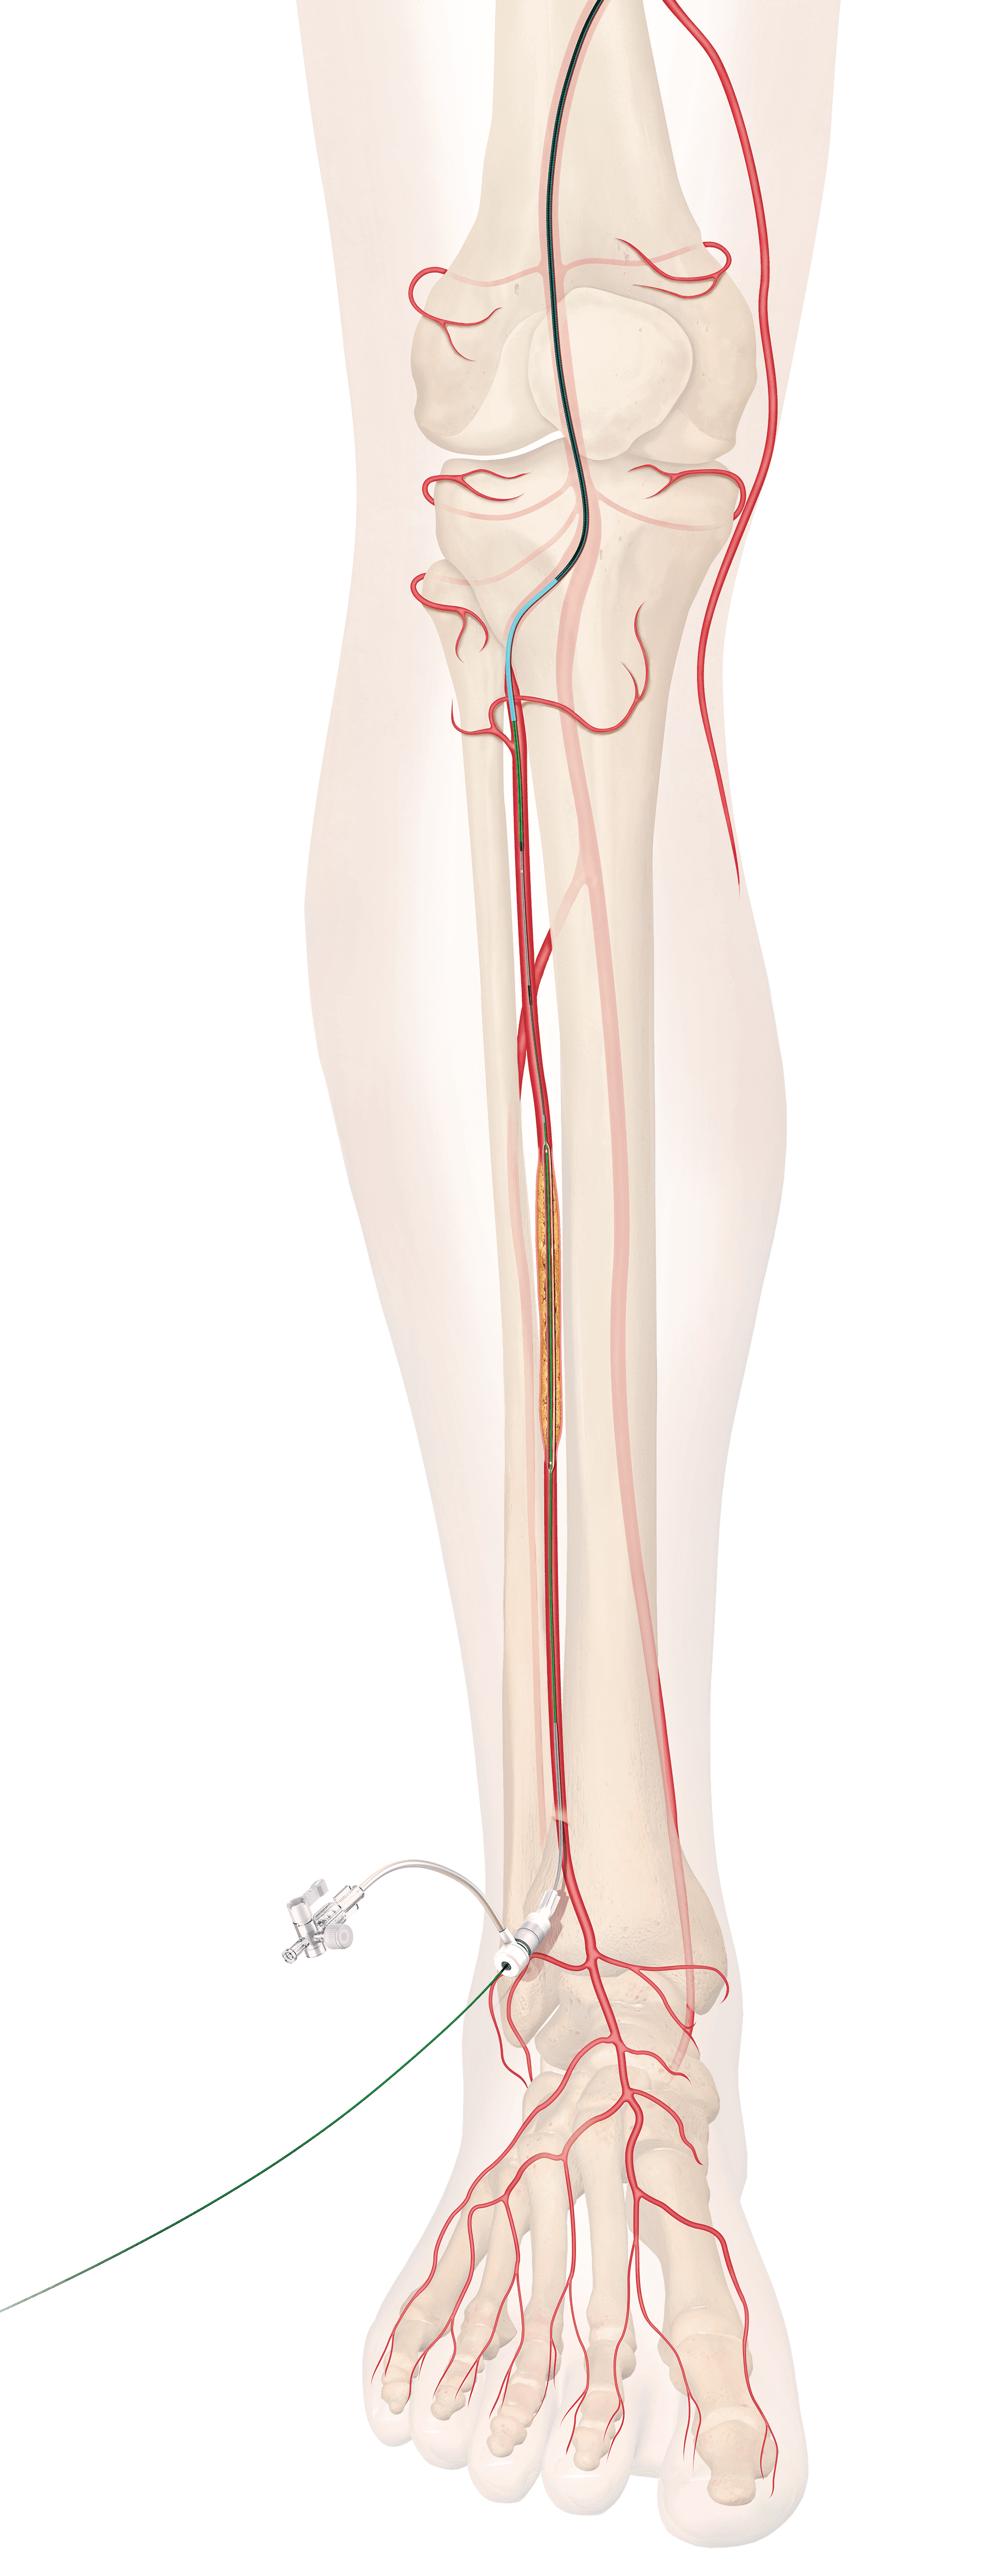 below-the-knee (BTK) stent graphic